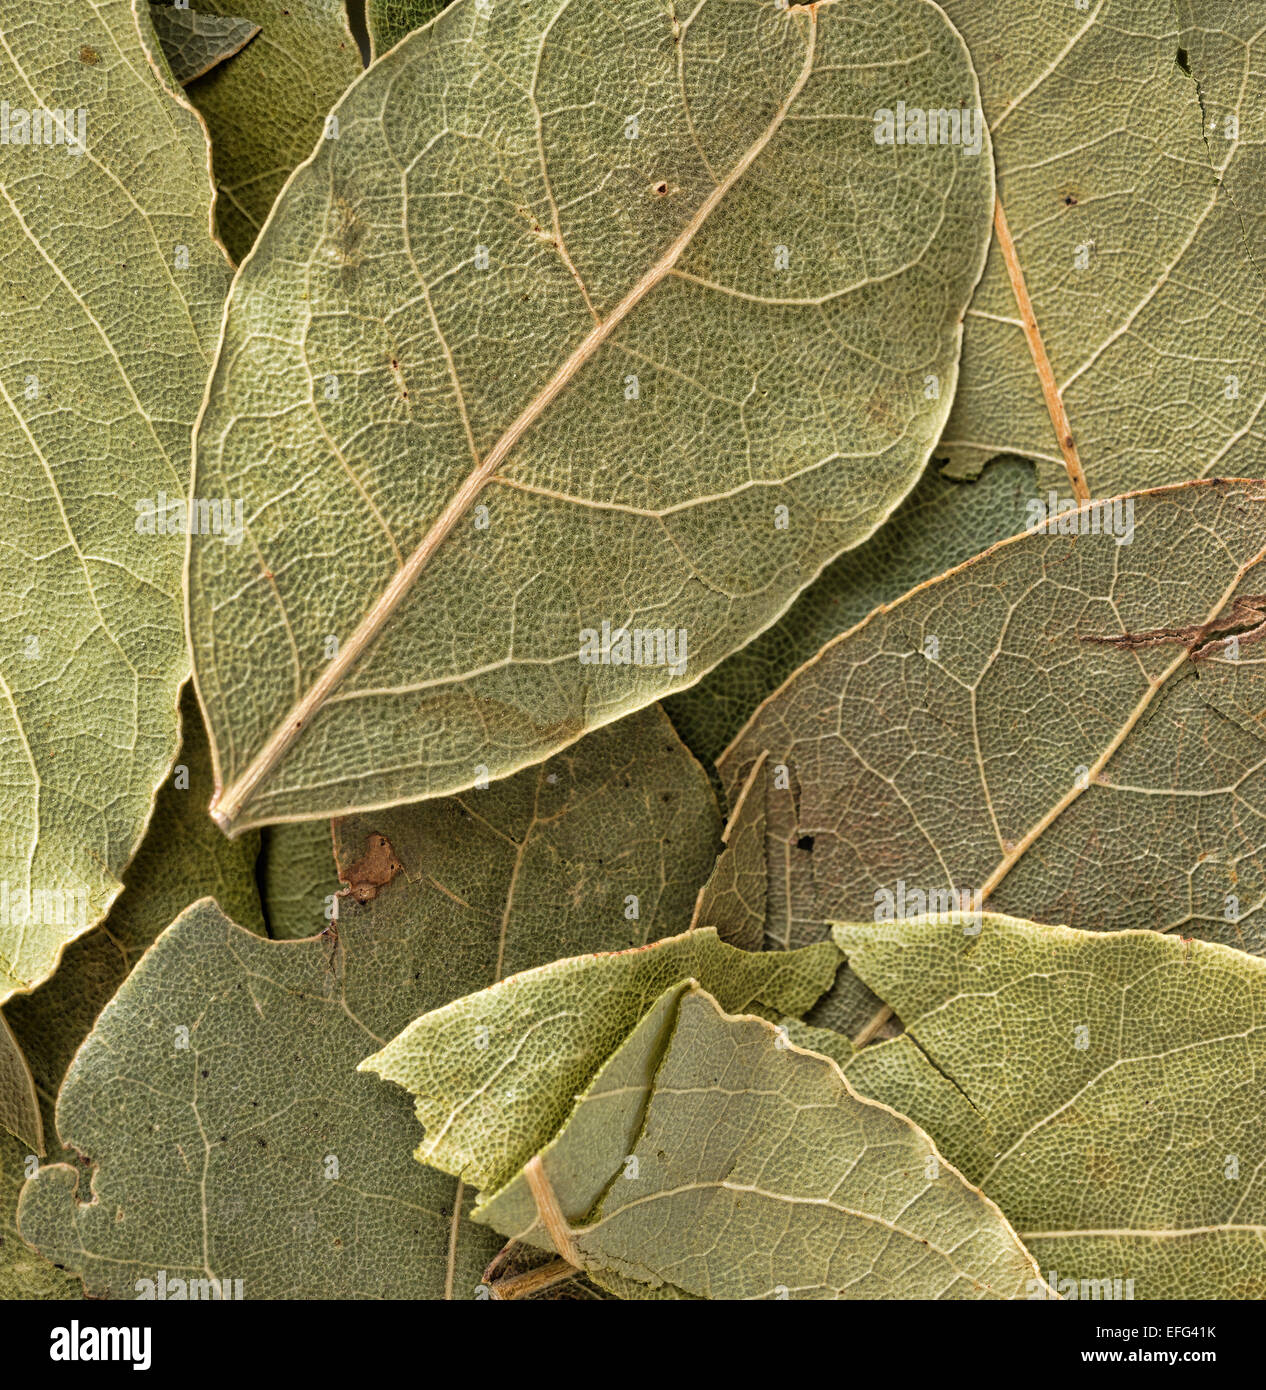 Ganz in der Nähe Blick auf getrocknetes Basilikum Blätter zum Kochen  Stockfotografie - Alamy